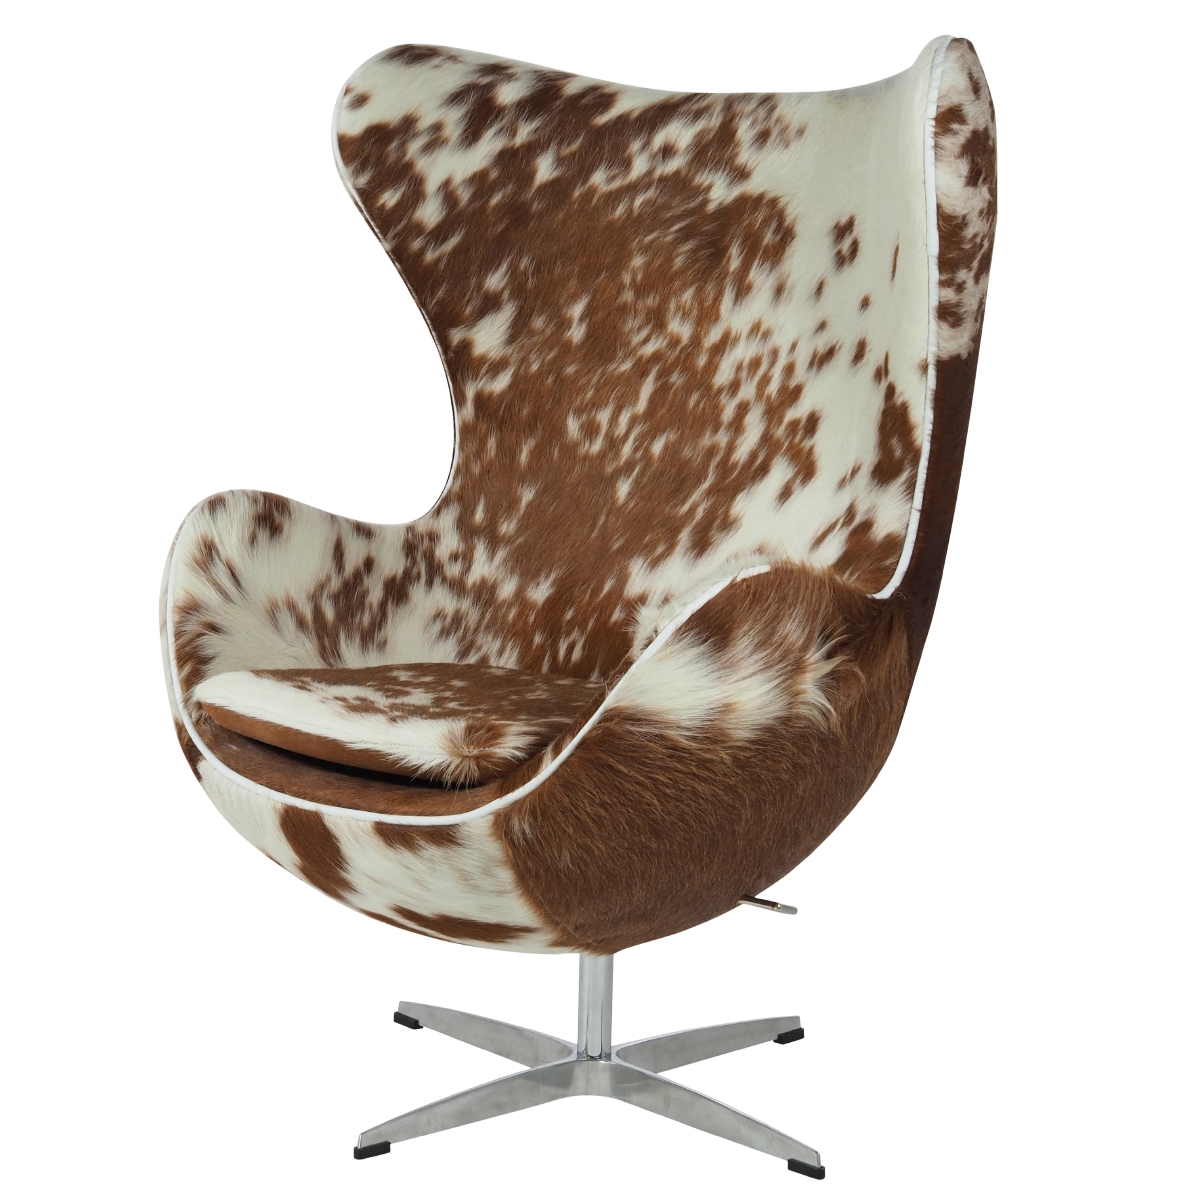 Jacobsen Armlehnstuhle Egg Chair Brown White Design Armlehnstuhle